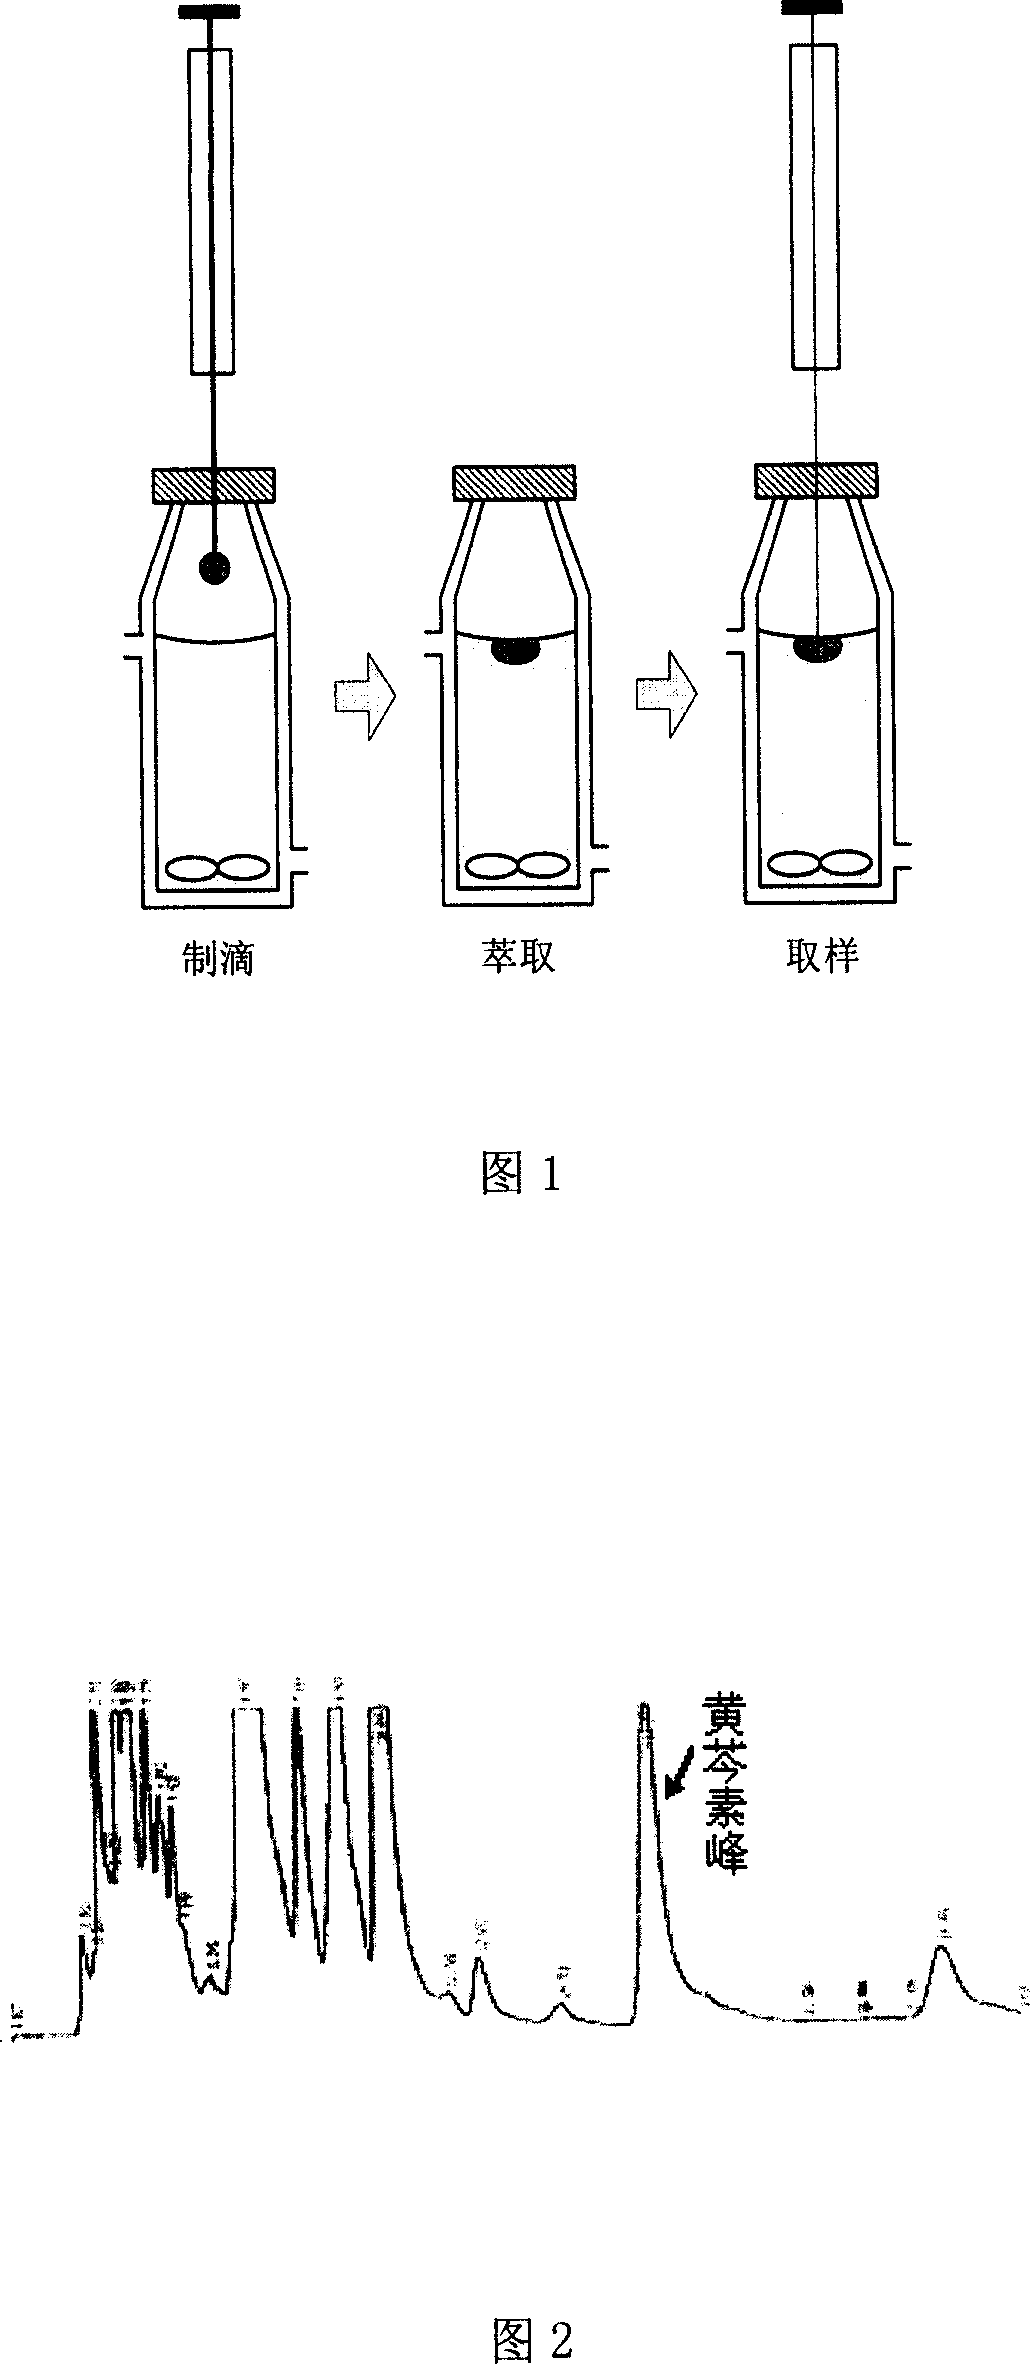 Hanging drop type liquid-liquid micro-extraction method